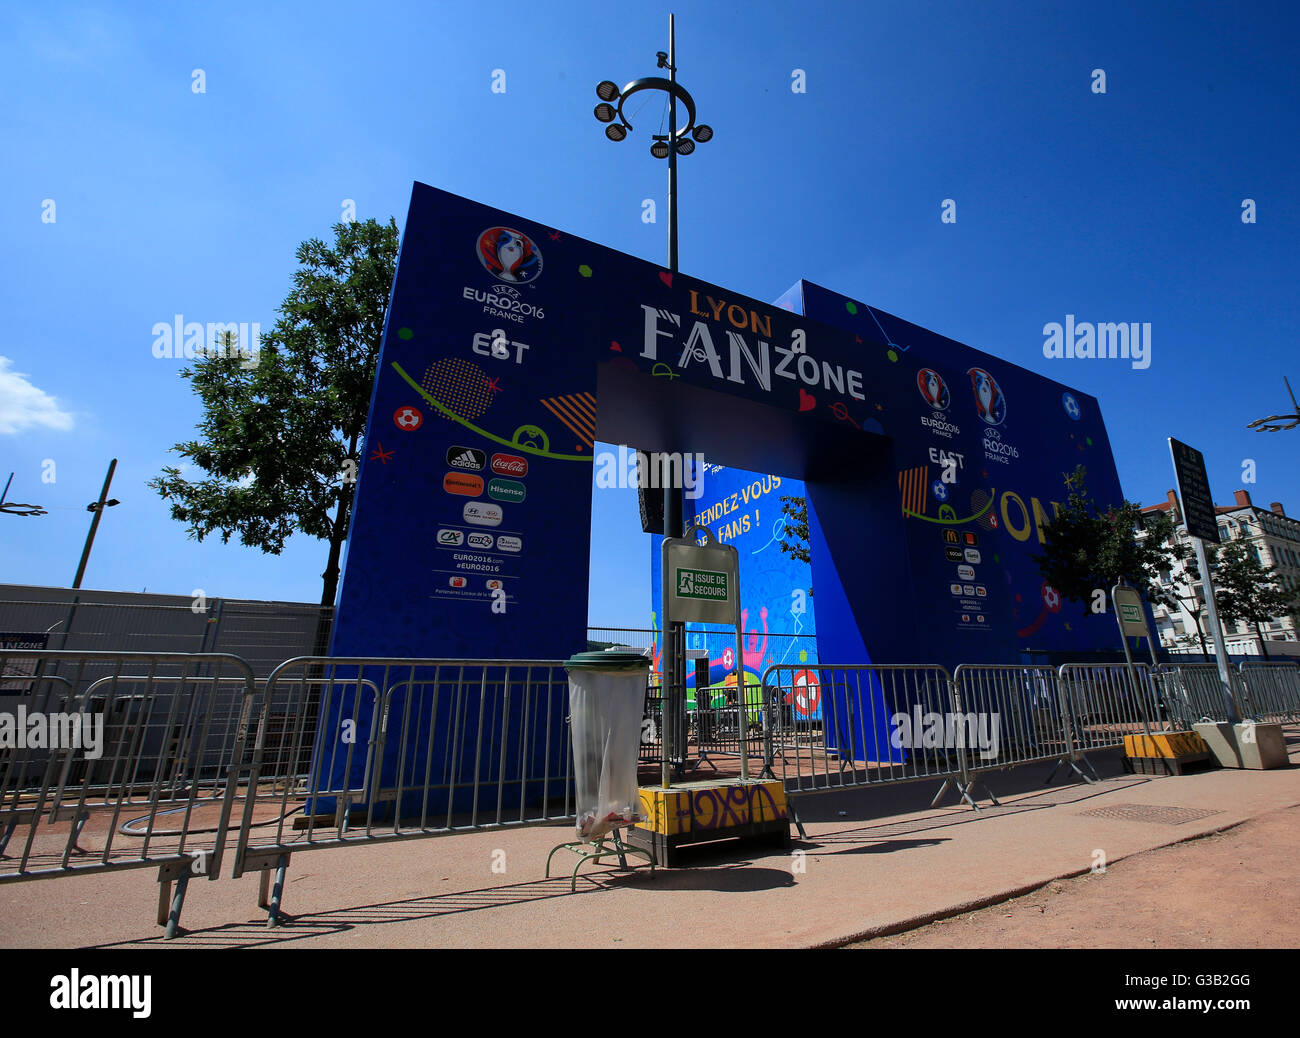 La entrada a la zona de fans en la Place Bellecour, Lyon, Francia. Asociación de la prensa de la foto. Imagen Fecha: jueves 9 de junio, 2016. Crédito de la foto debe leer: Jonathan Brady PA/cable Foto de stock